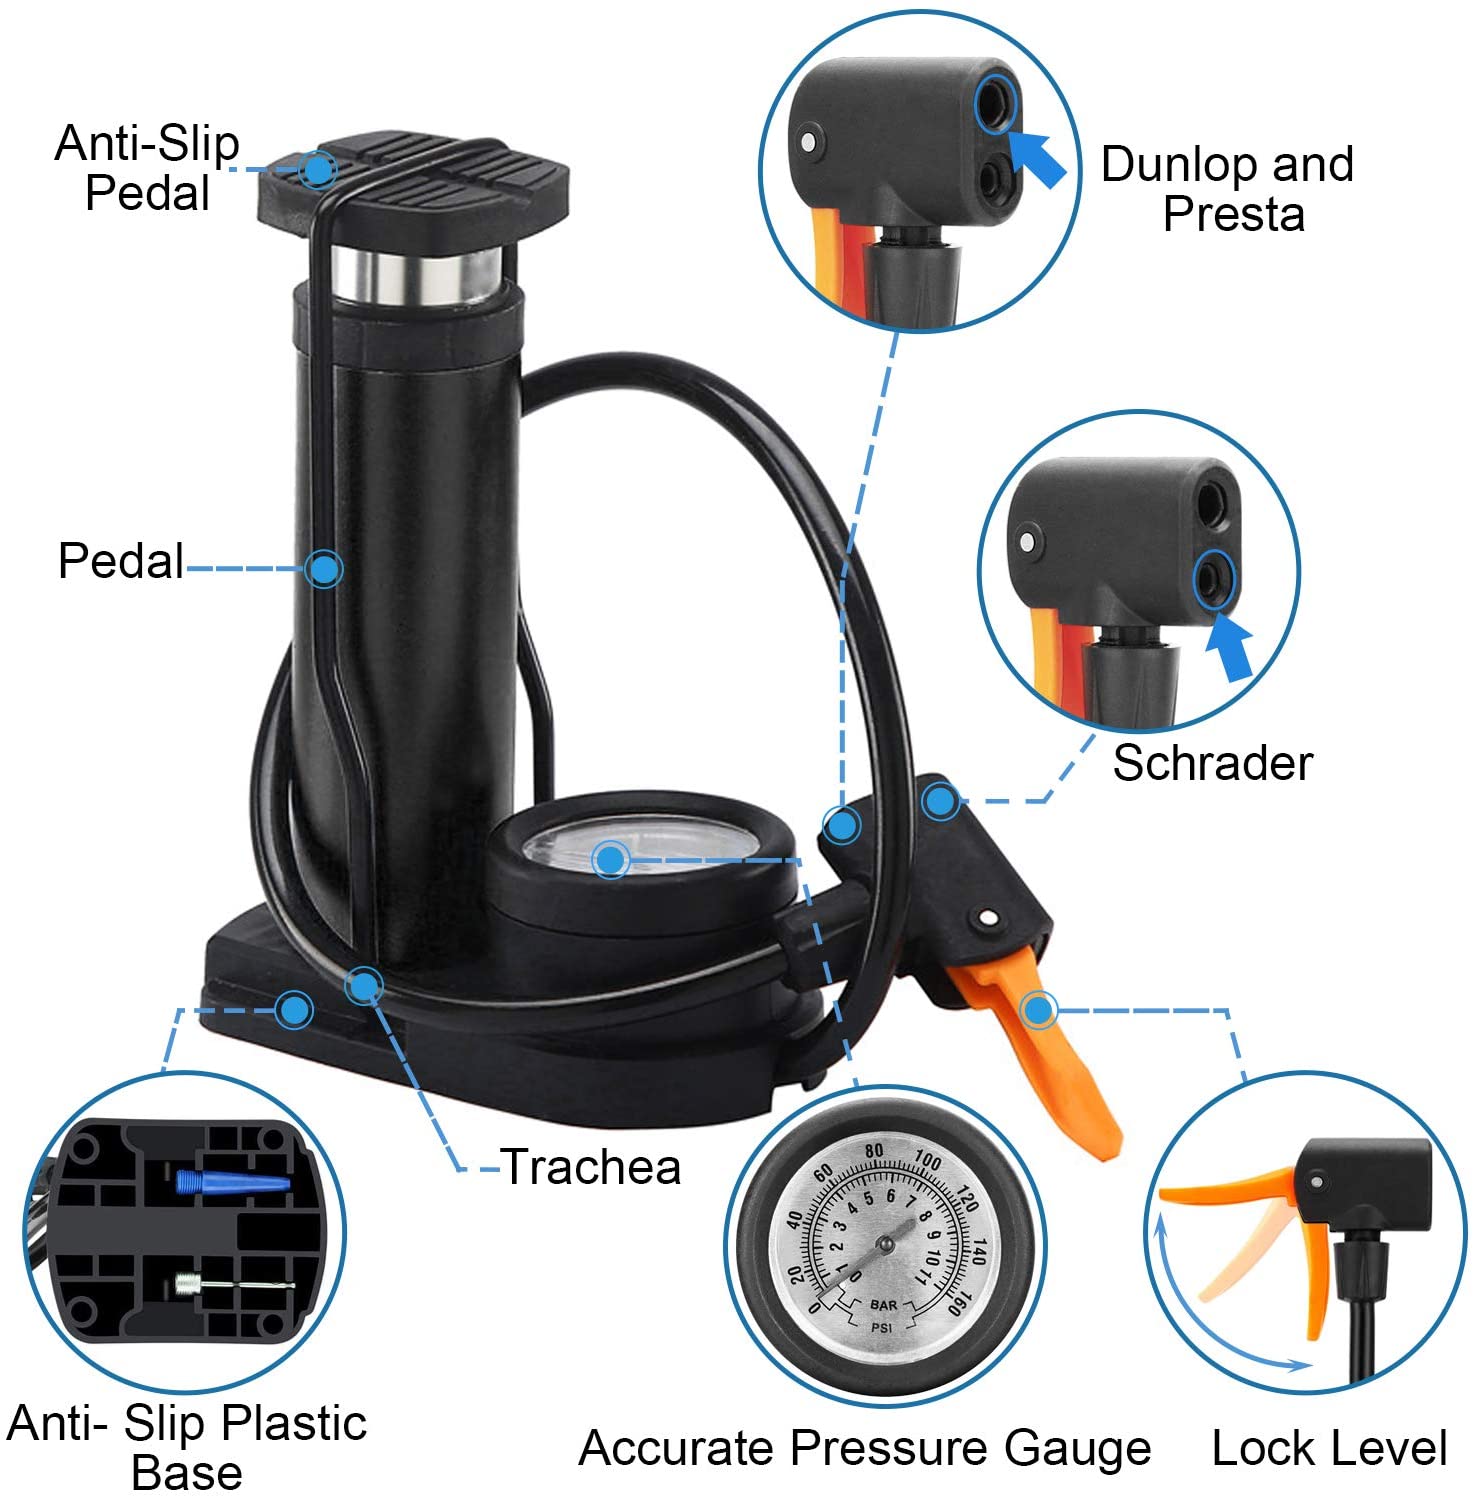 Mini-pompe-pied-de-v-lo-Portable-avec-manom-tre-accessoires-adapt-s-aux-valves-Presta